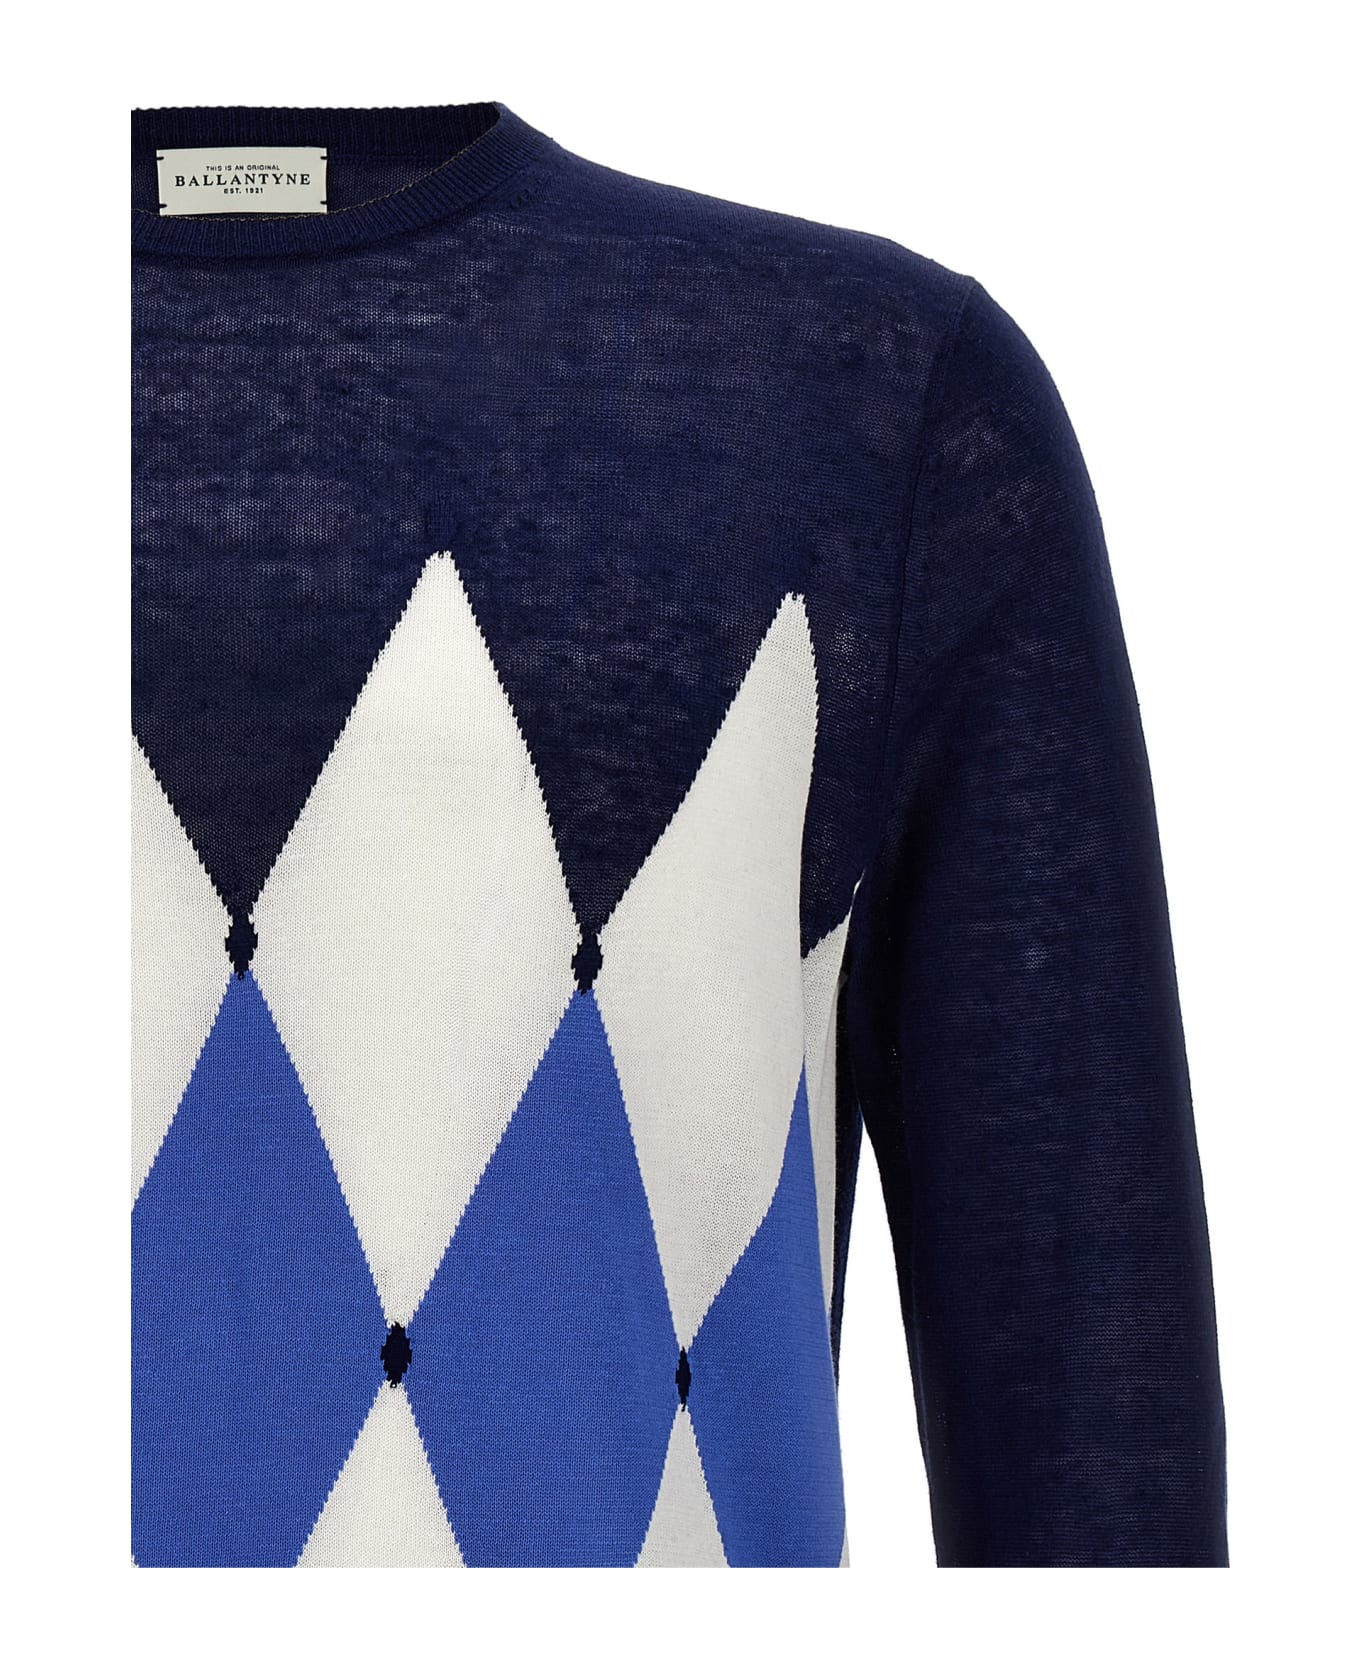 Ballantyne 'argyle' Sweater - Blue ニットウェア